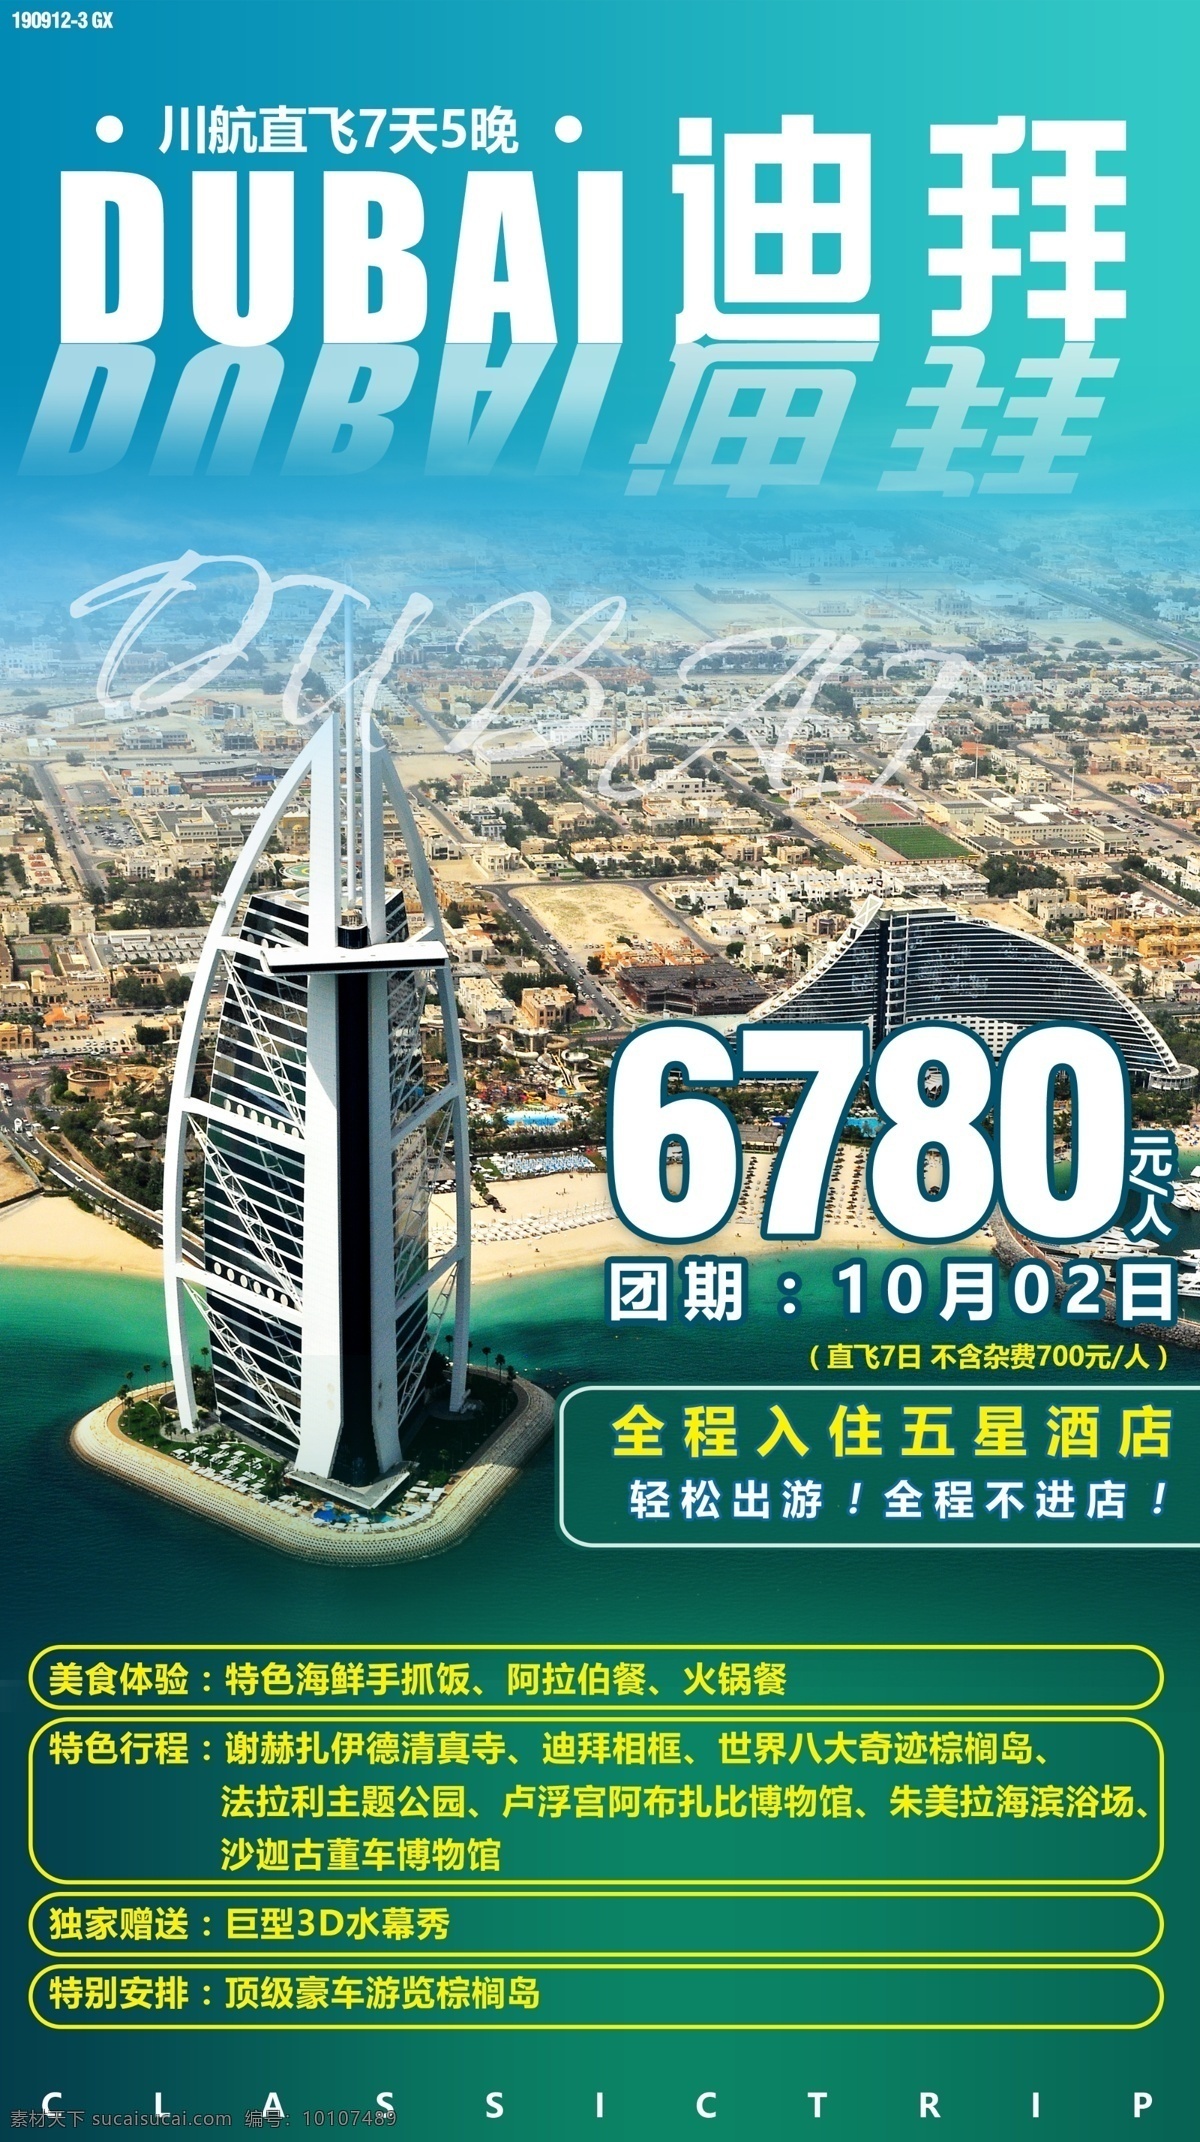 迪拜旅游海报 迪拜 旅游 海报 帆船酒店 阿联酋